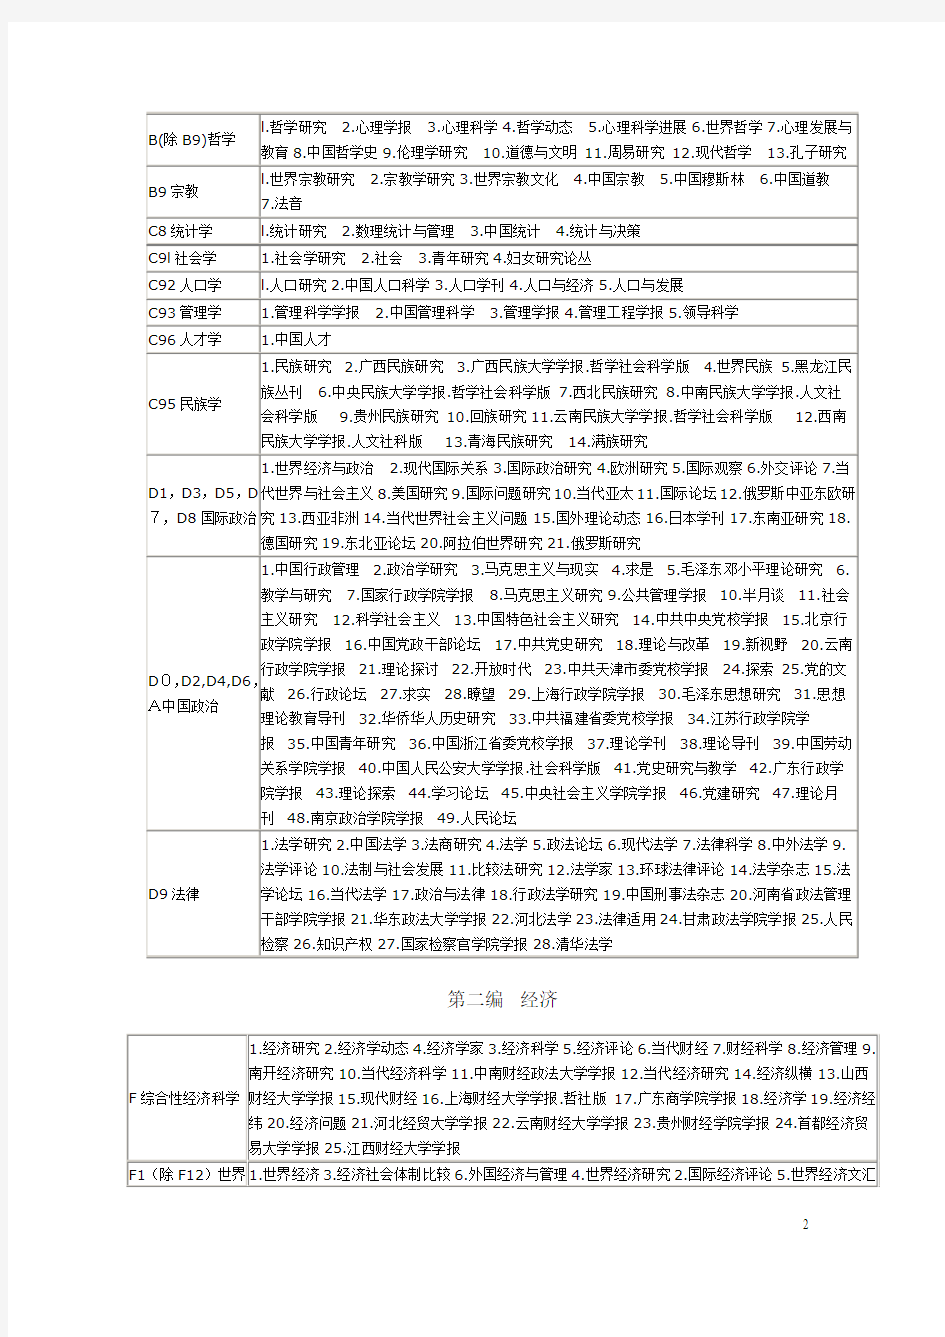 中文核心期刊目录总览(第六版)